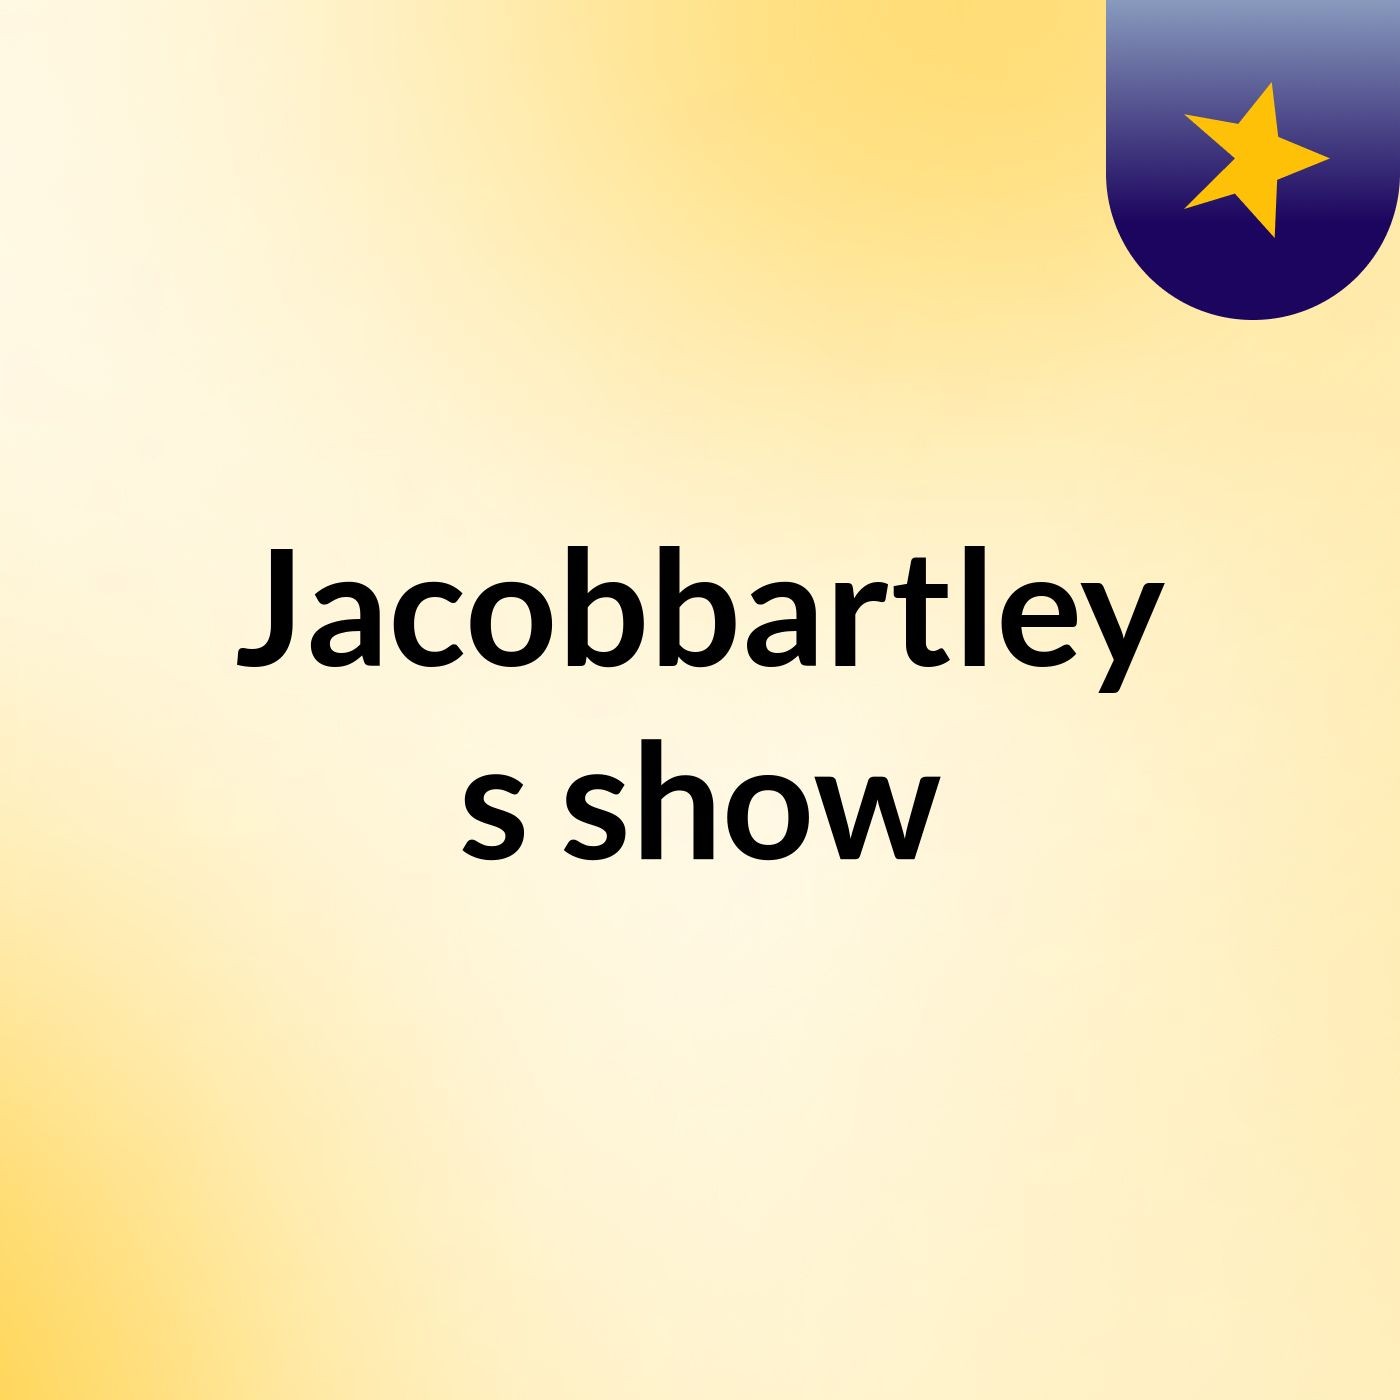 Episode 24 - Jacobbartley's show